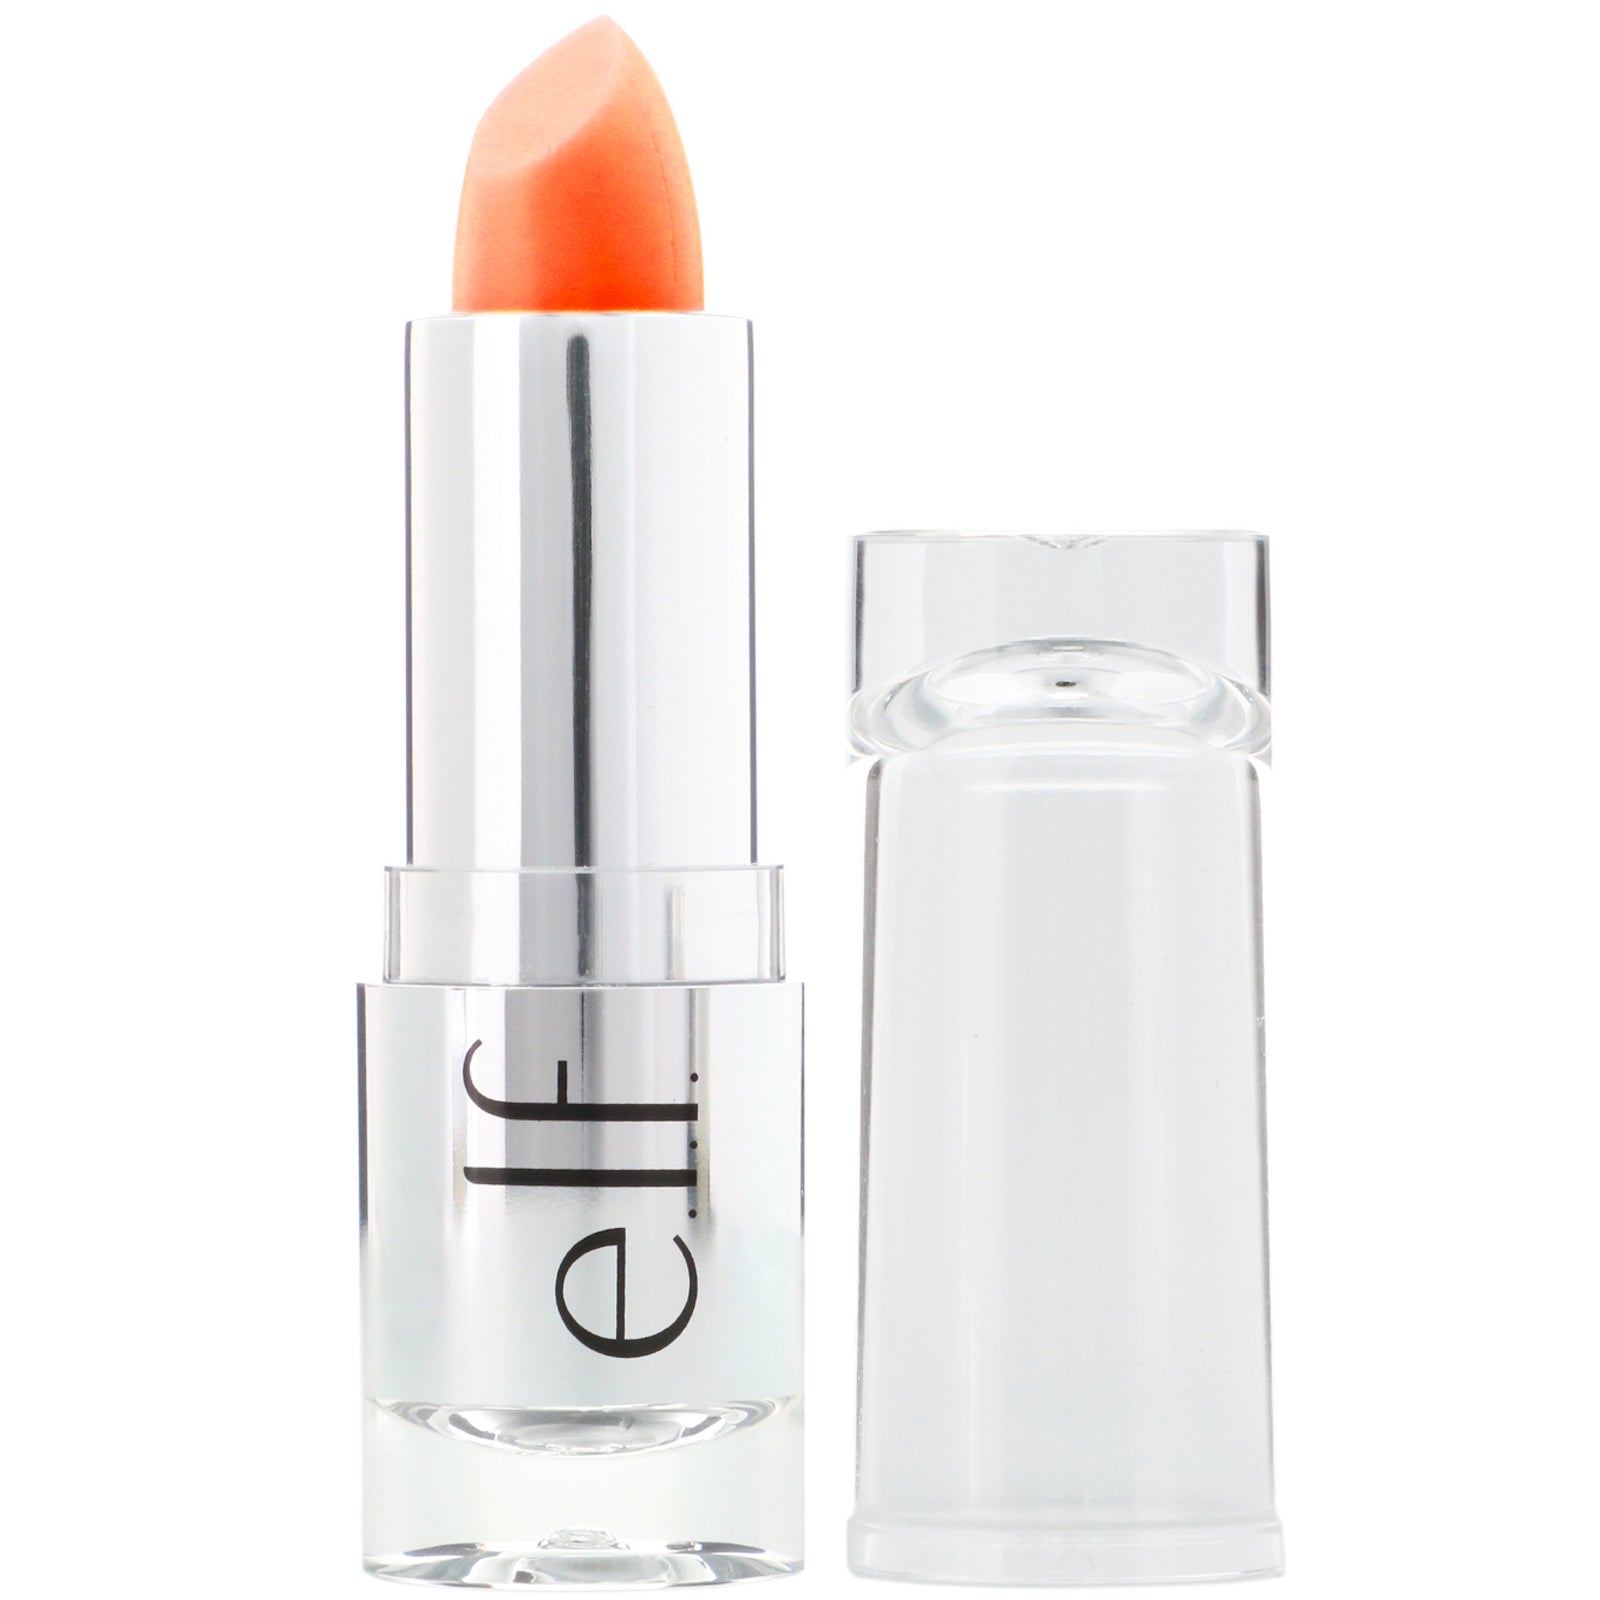 E.L.F., Gotta Glow Lip Tint, Perfect Peach, 0.13 oz (3.8 g)